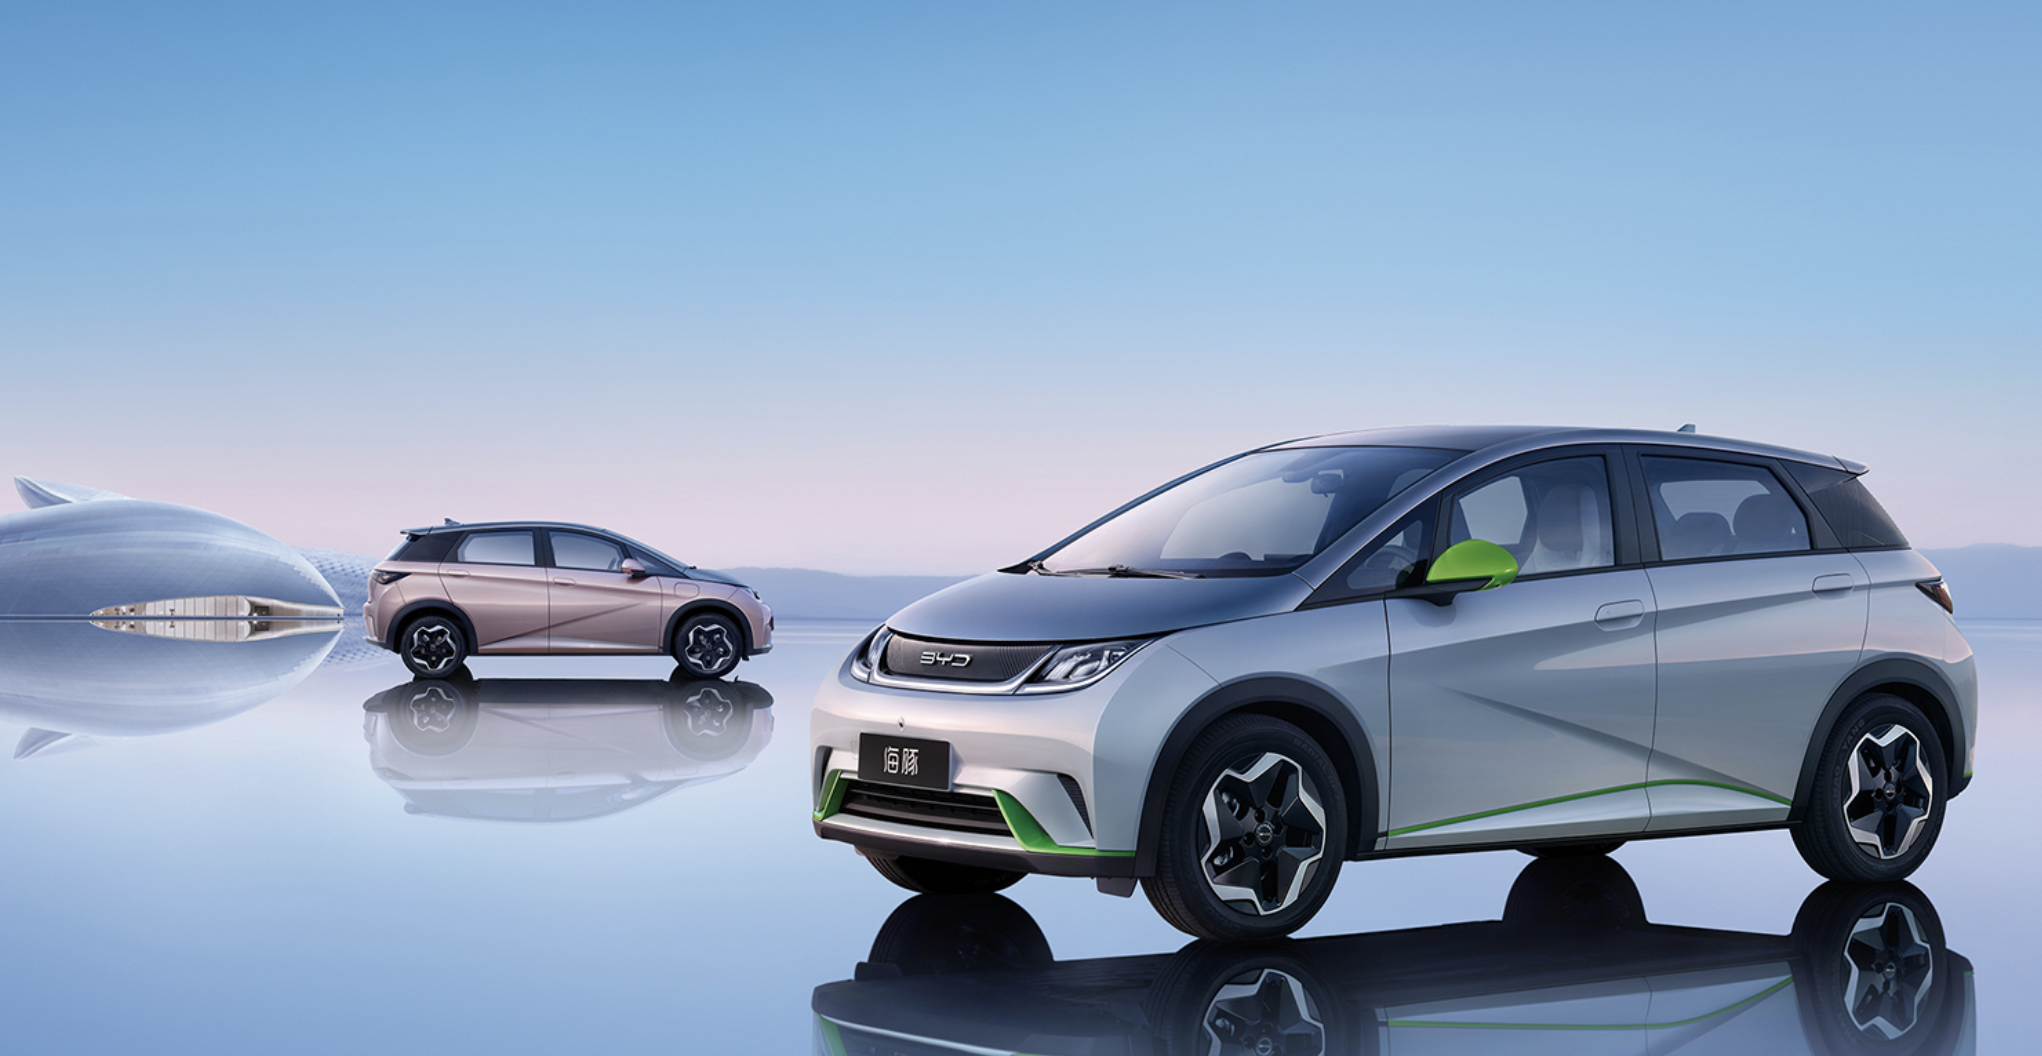 10万左右纯电动汽车,比亚迪"三电"技术目前在国内处绝对优势!